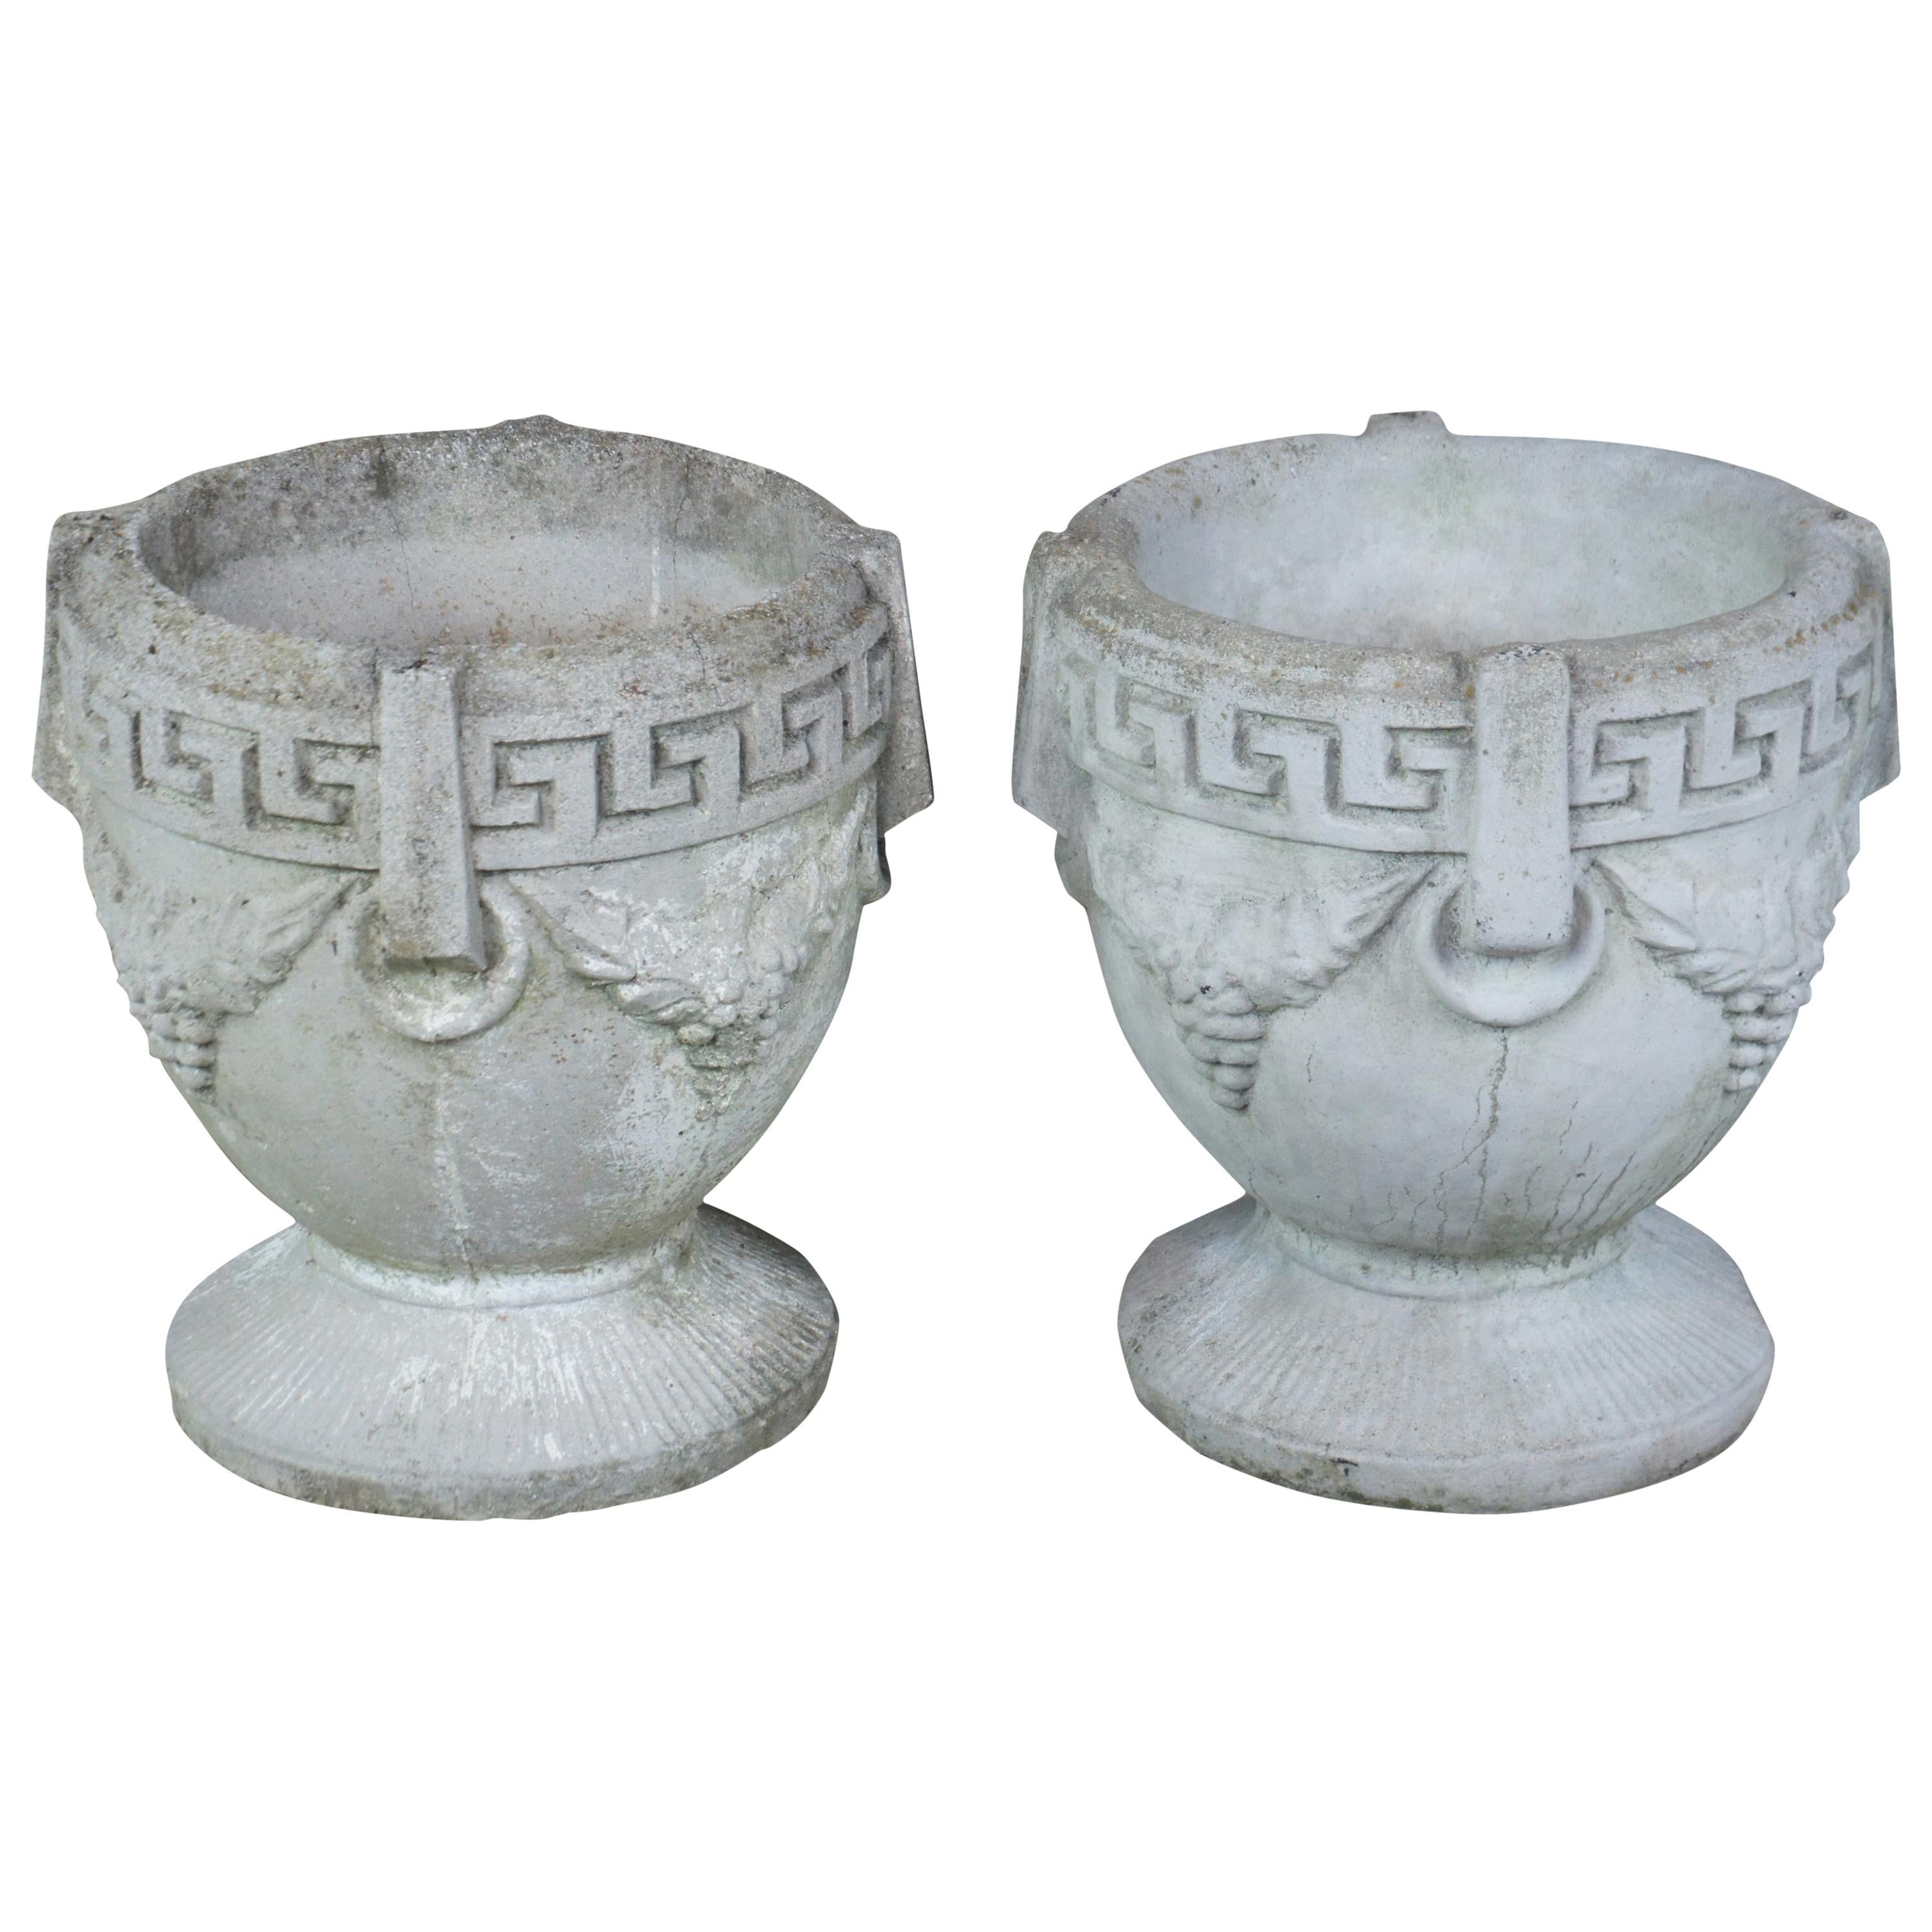 2 Antique Concrete Grecian Greek Key and Grape Garden Flower Planters Pots Urns